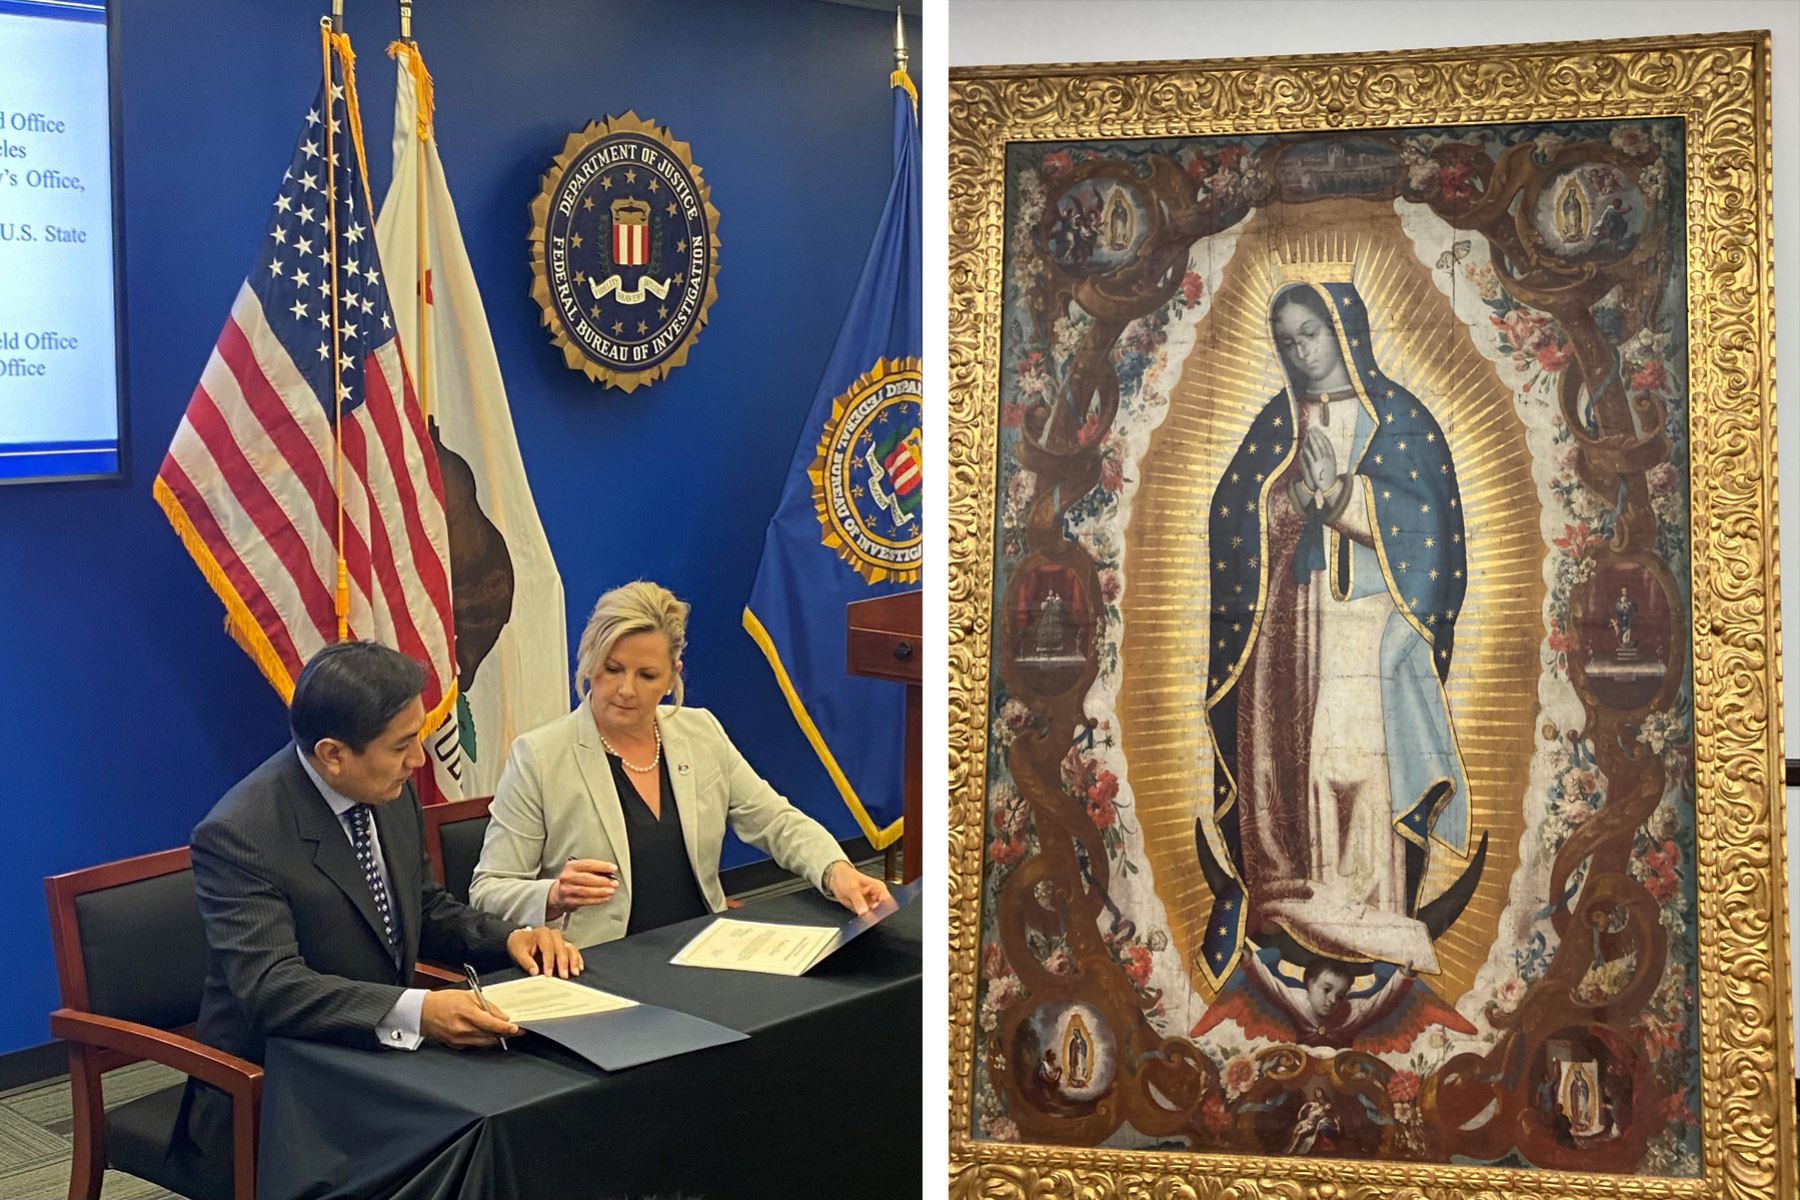 Funcionarios estadounidenses han repatriado 16 objetos culturales al Gobierno peruano, incluidos cuadros, documentos históricos y hachas de piedra. Foto: Twitter FBI Los Ángeles.